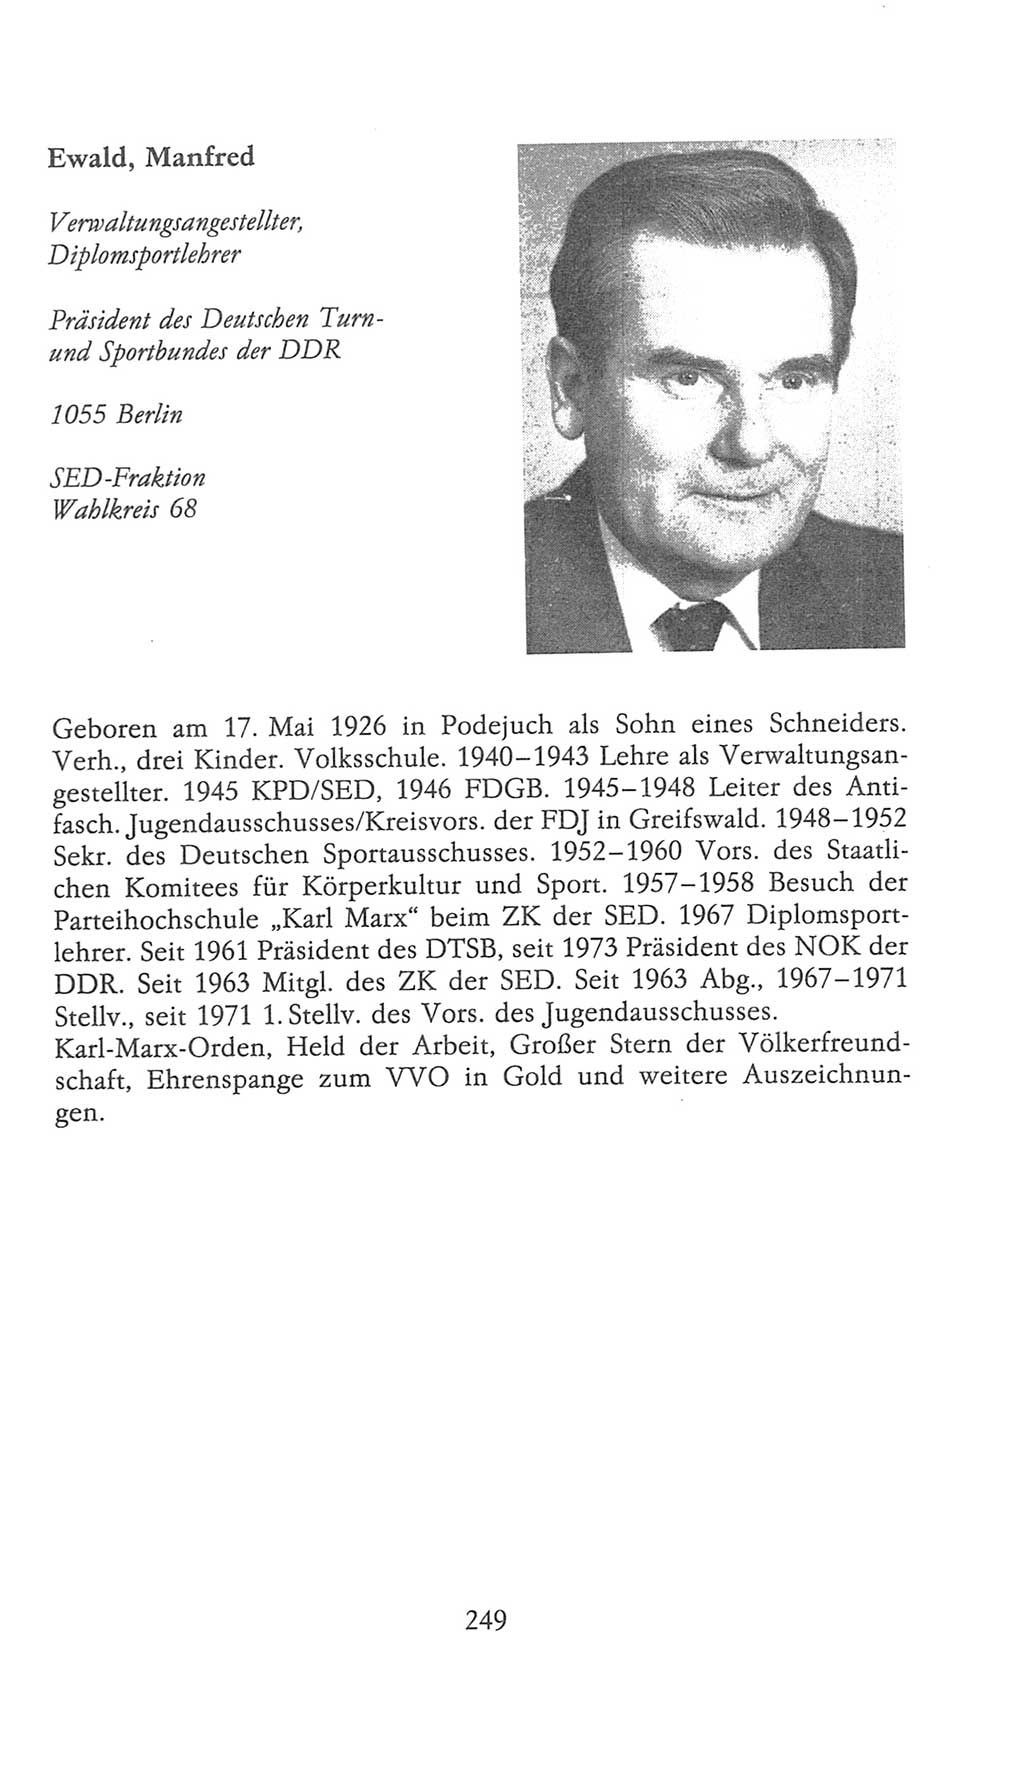 Volkskammer (VK) der Deutschen Demokratischen Republik (DDR), 9. Wahlperiode 1986-1990, Seite 249 (VK. DDR 9. WP. 1986-1990, S. 249)